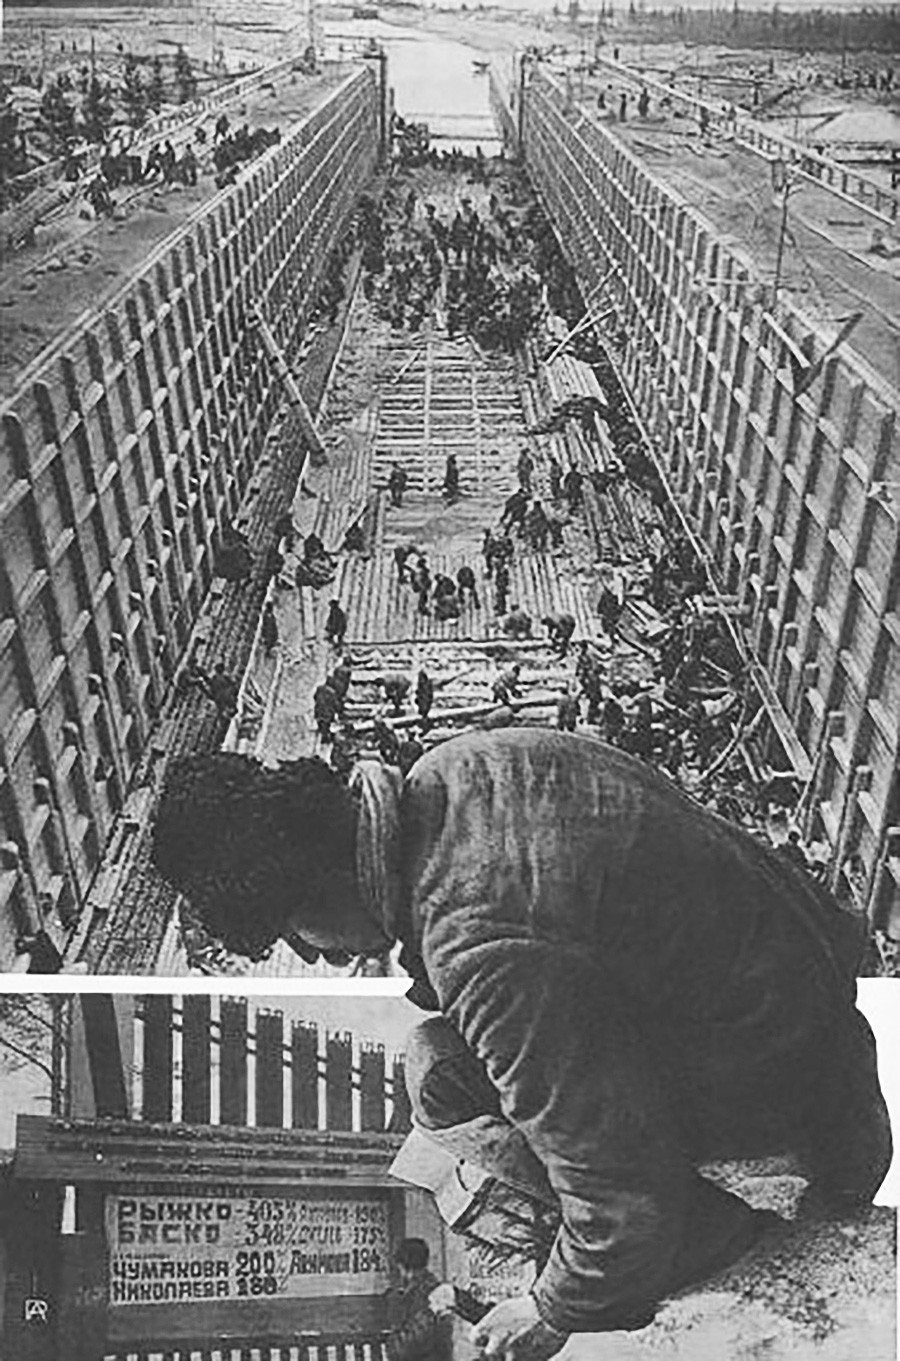 Снимки крупных строительных проектов в российской и советской истории